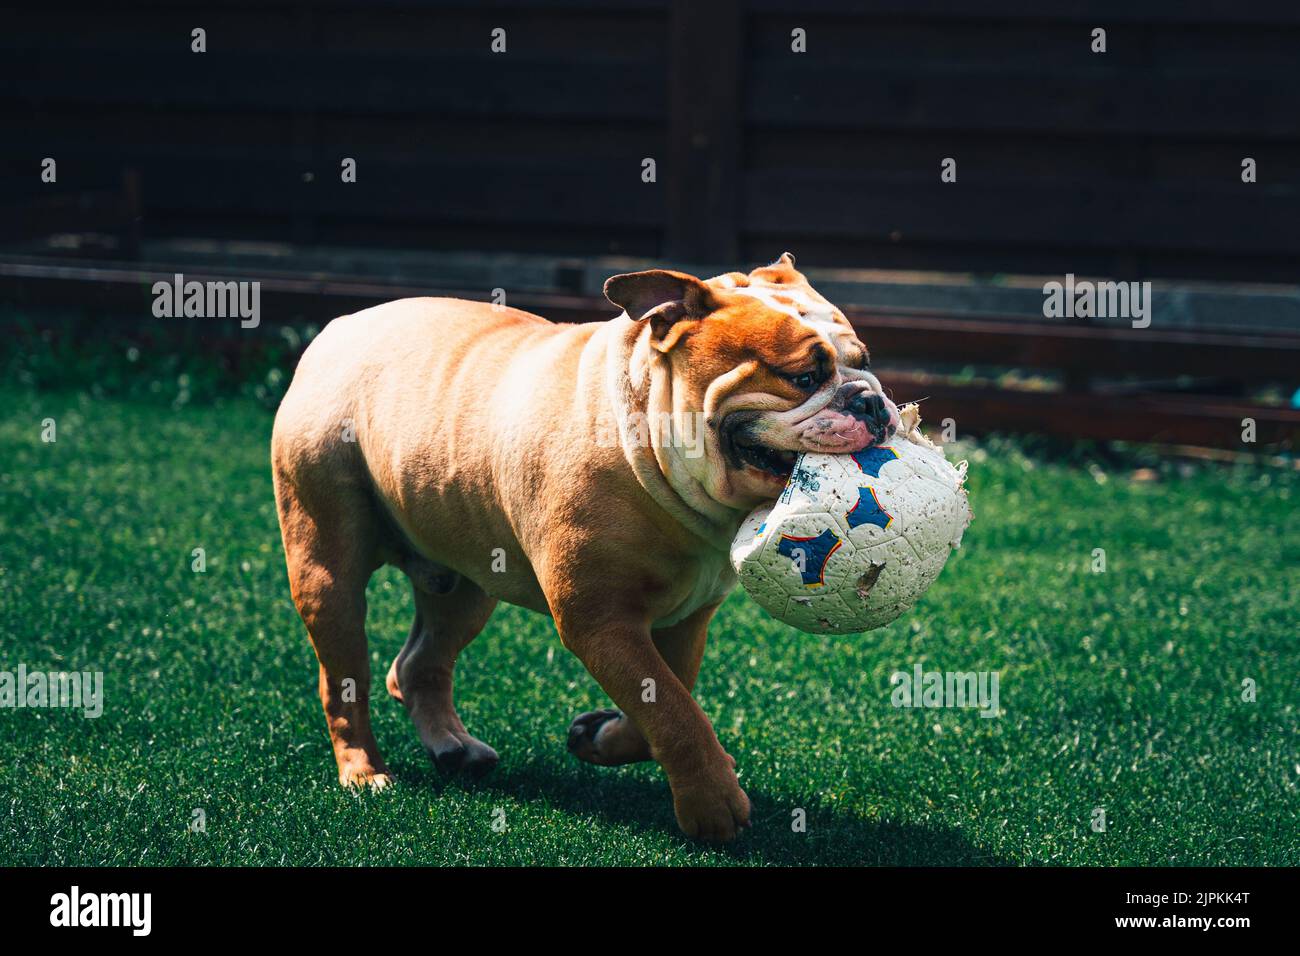 Eine braune Bulldogge, die einen Ball auf einem grünen Gras hält Stockfoto